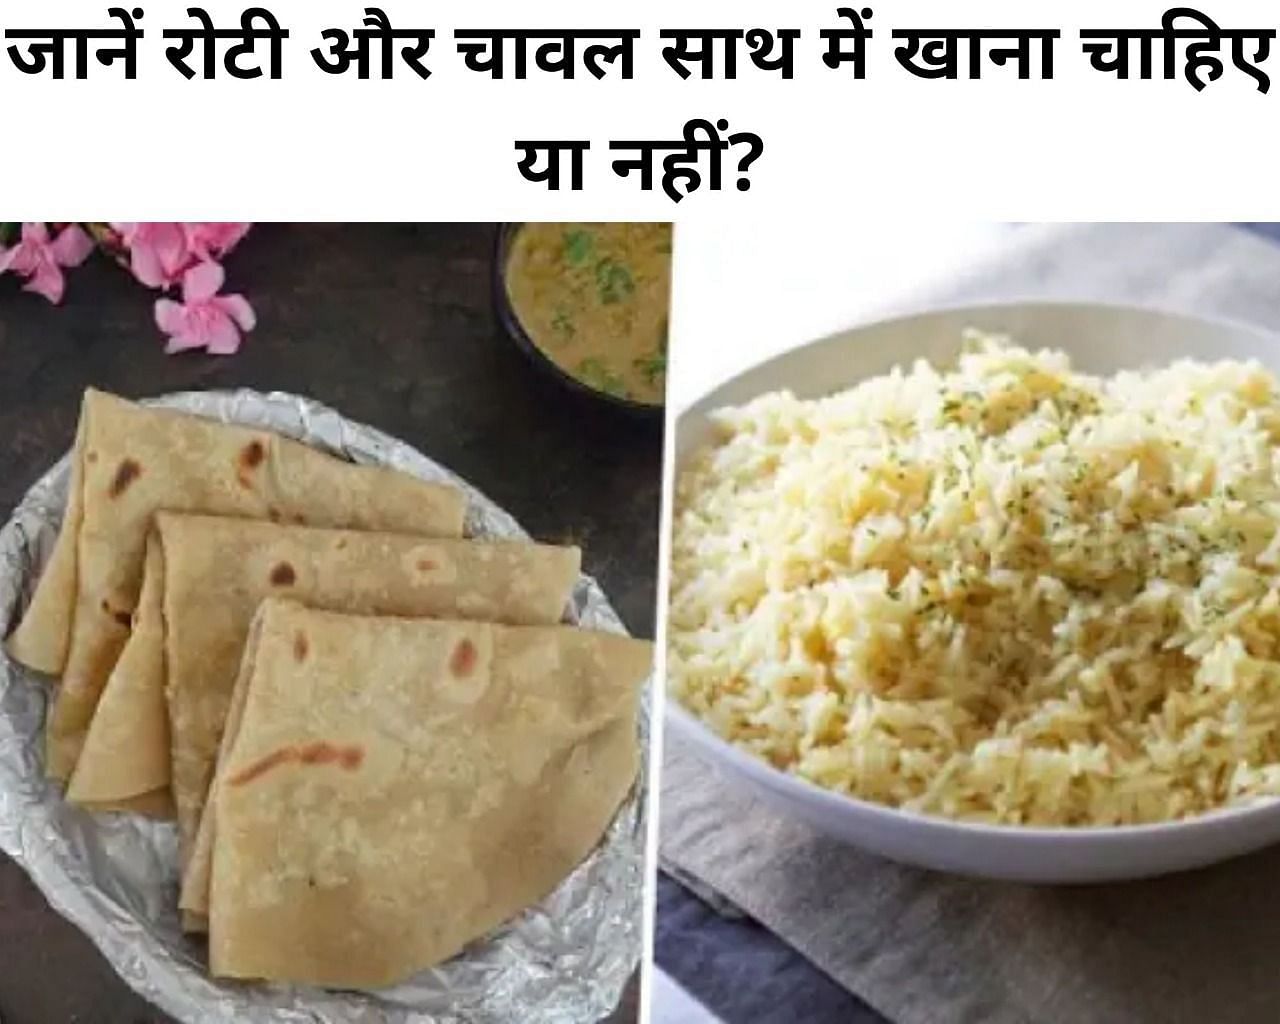 जानें रोटी और चावल साथ में खाना चाहिए या नहीं? (फोटो - sportskeeda hindi)